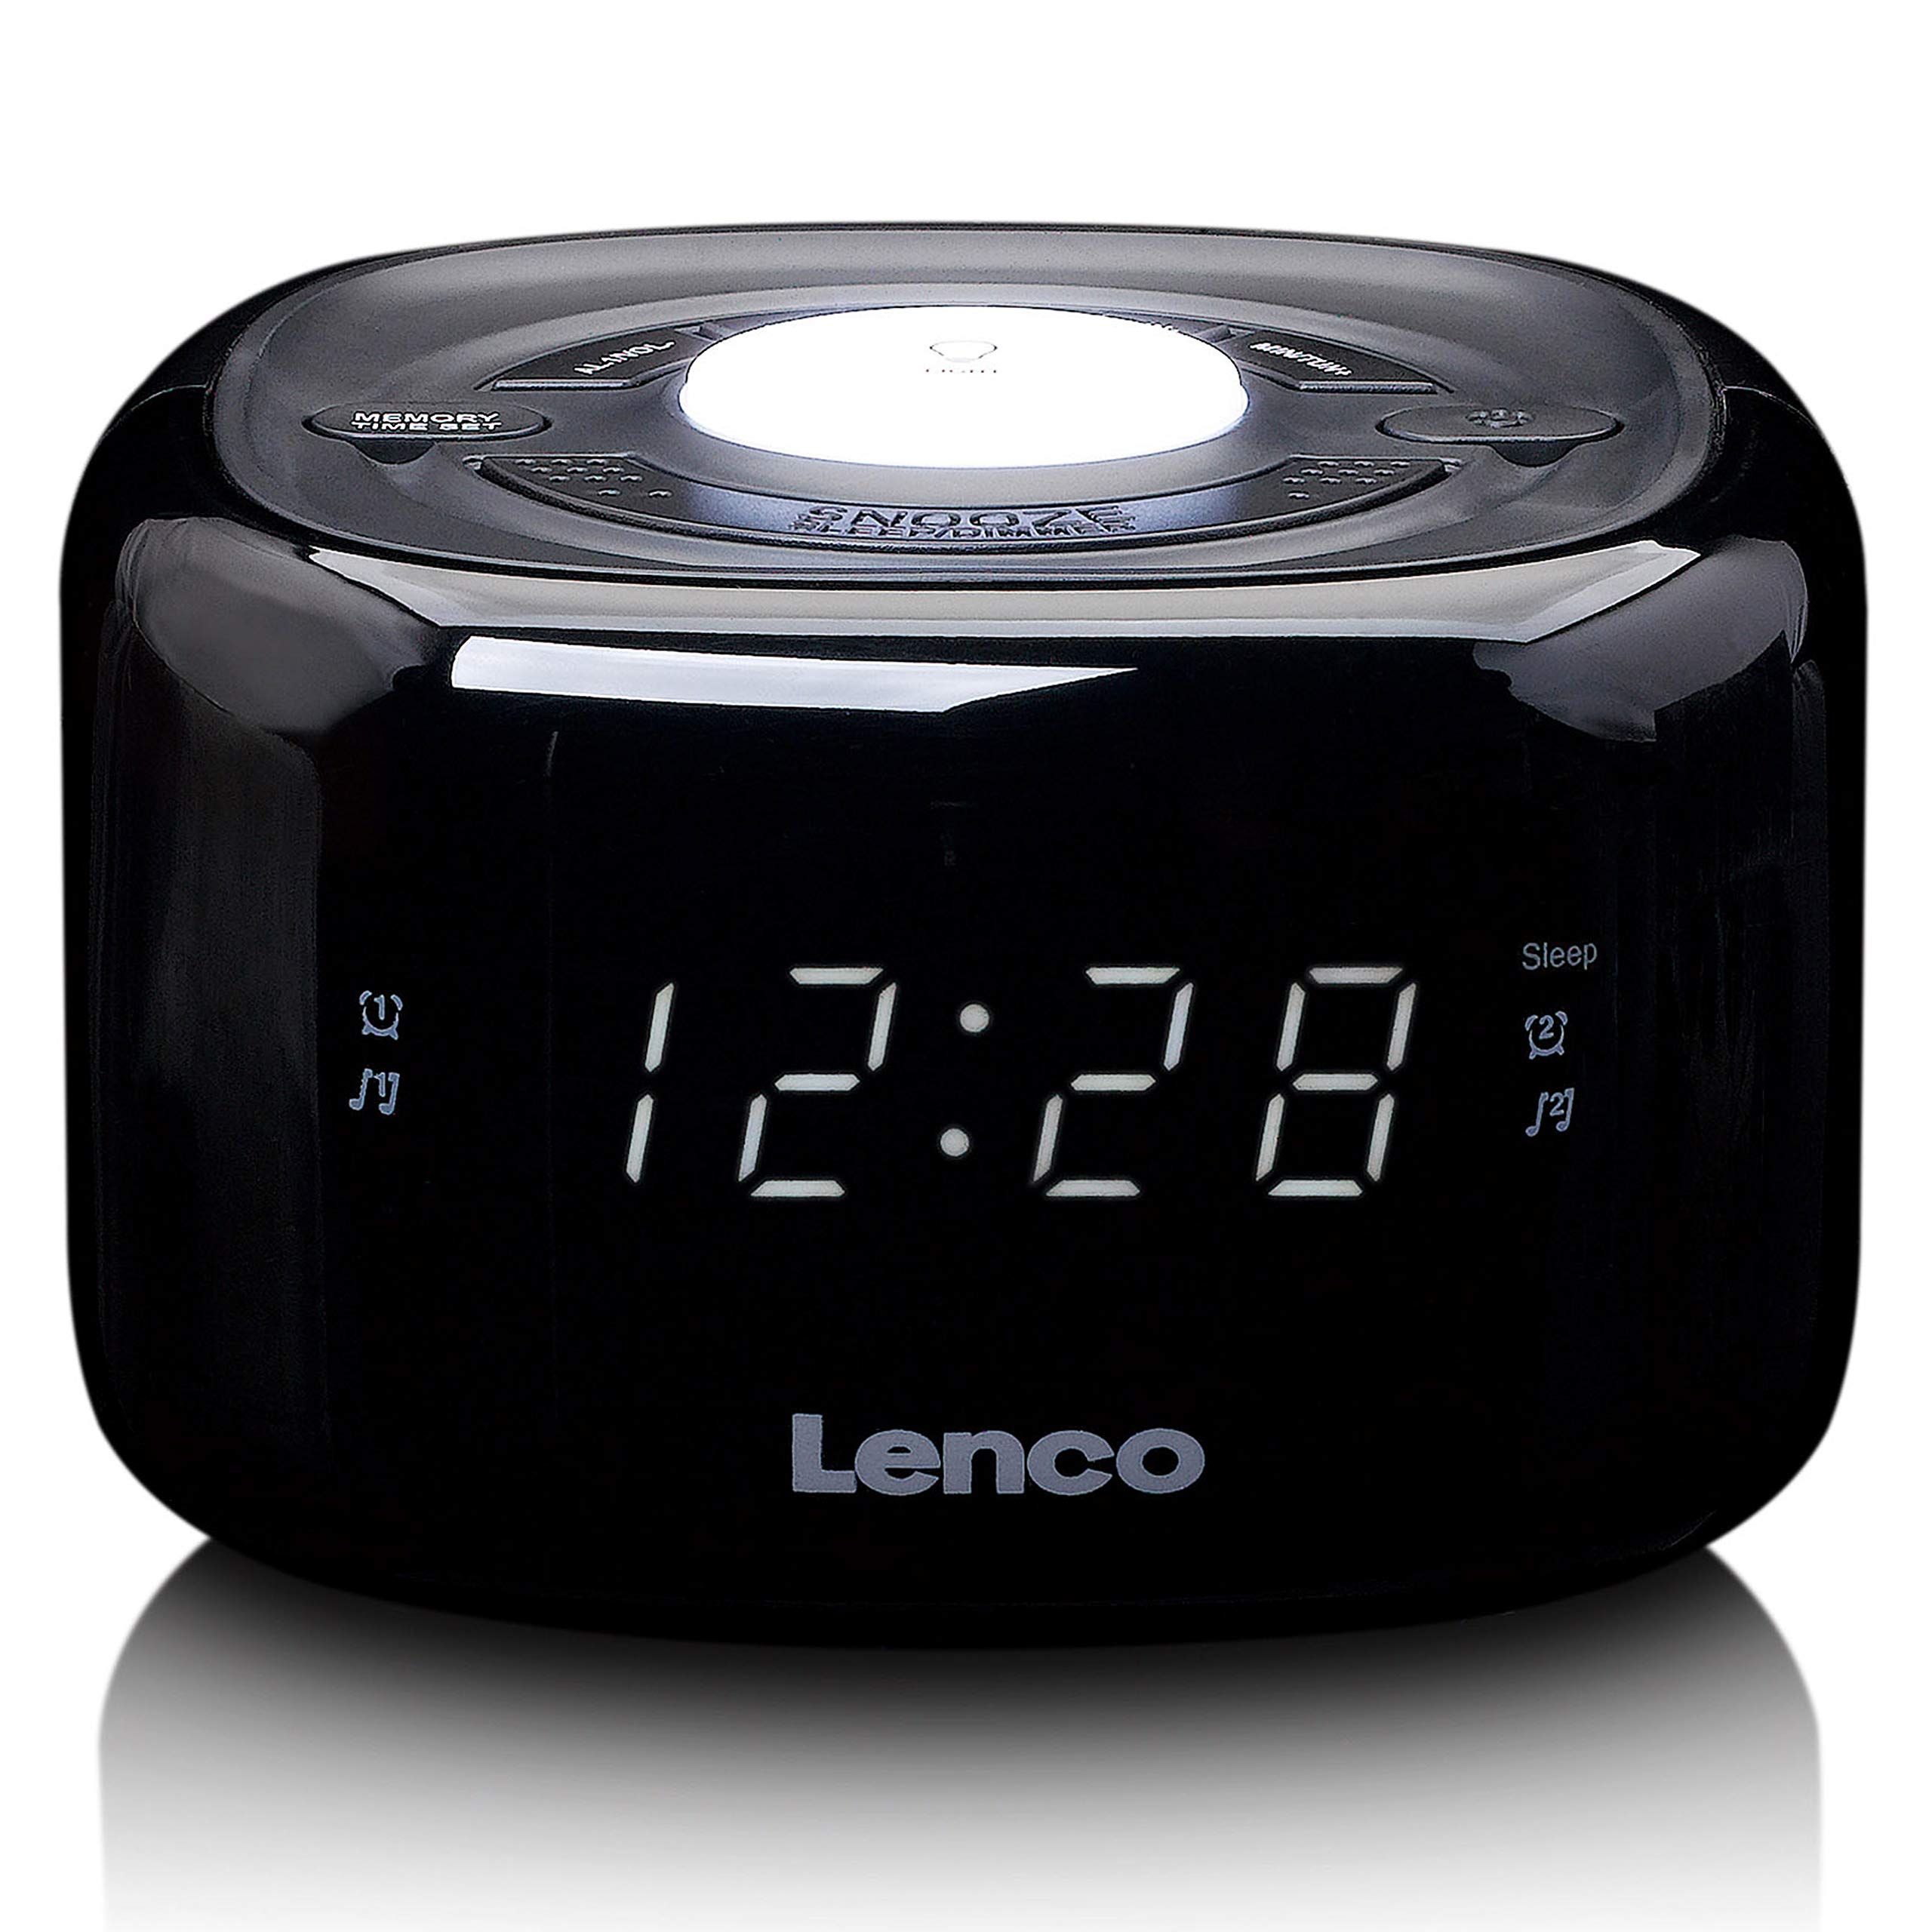 Lenco CR-12 Uhrenradio - Wecker mit Nachtlicht-Funktion - Easy Snooze - Sleep-Timer - Zwei Weckzeiten - 20 Senderspeicher - Anpassbare Helligkeitsregulierung - schwarz, 117 x 117 x 71 mm